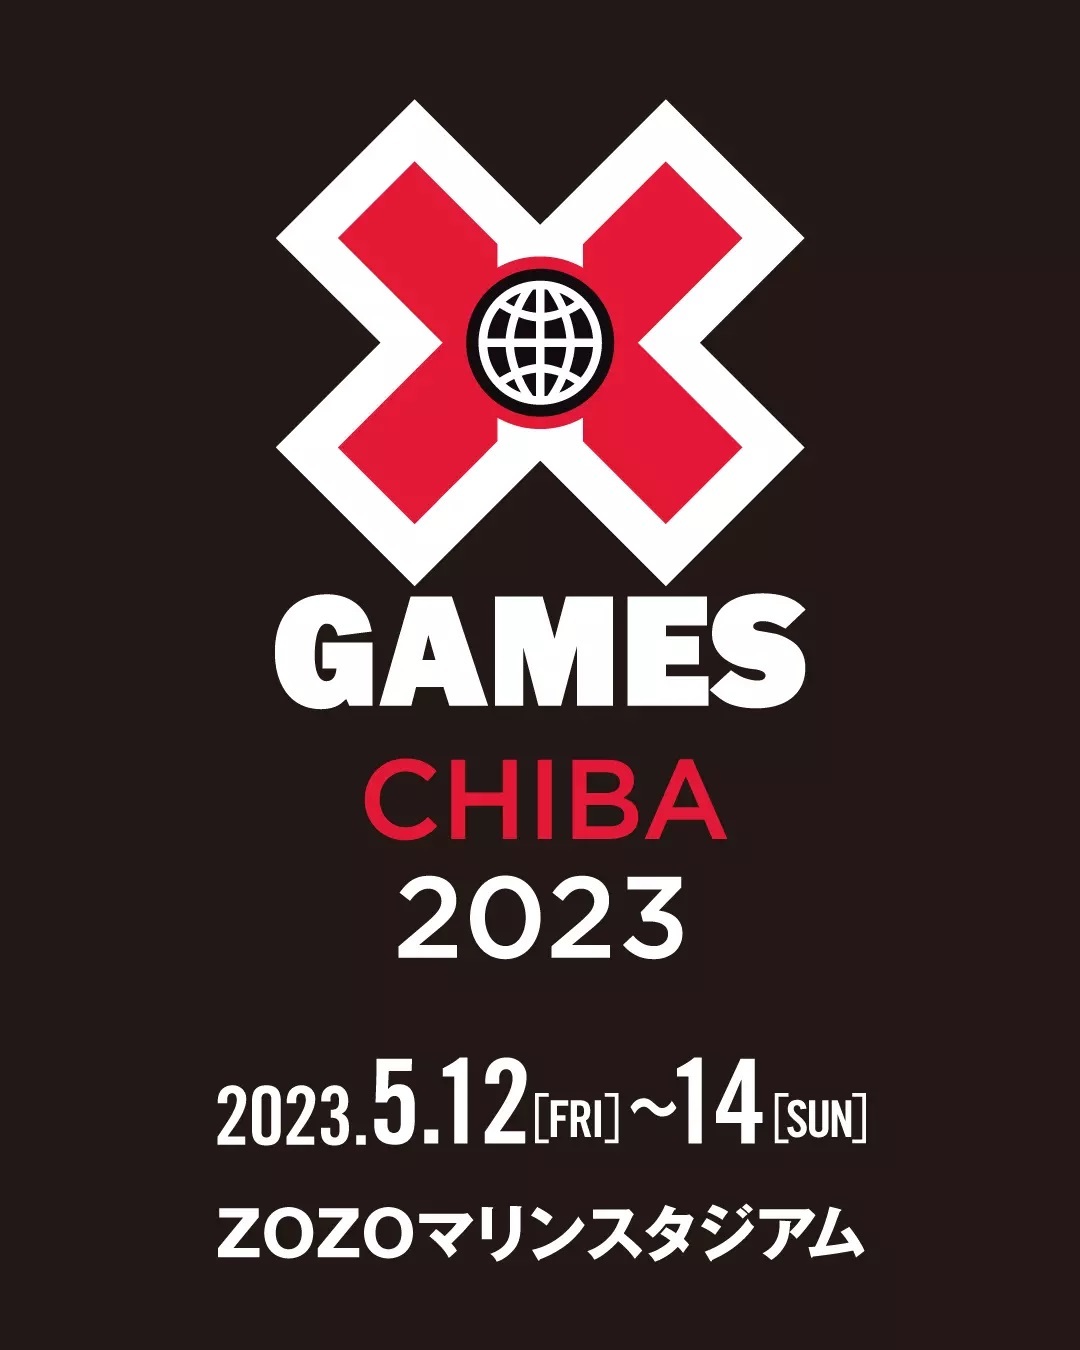 世界最大のアクションスポーツの国際競技会『X Games Chiba 2023』